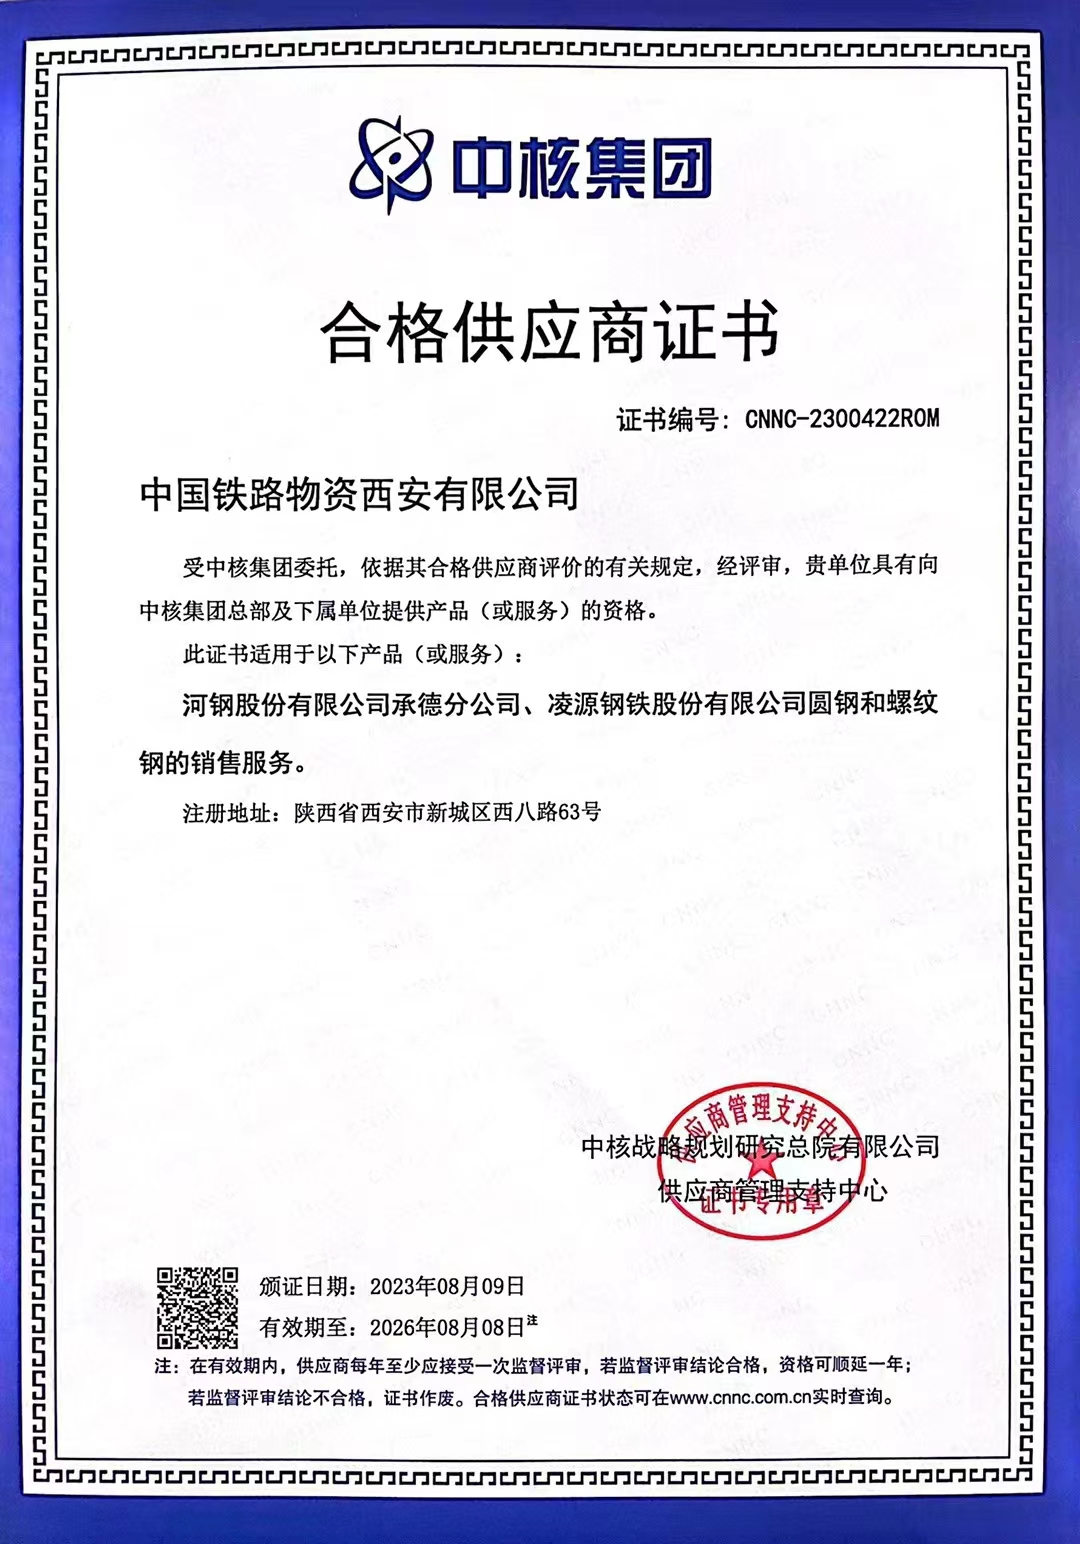 西安公司荣获中核集团合格供应商服务资格